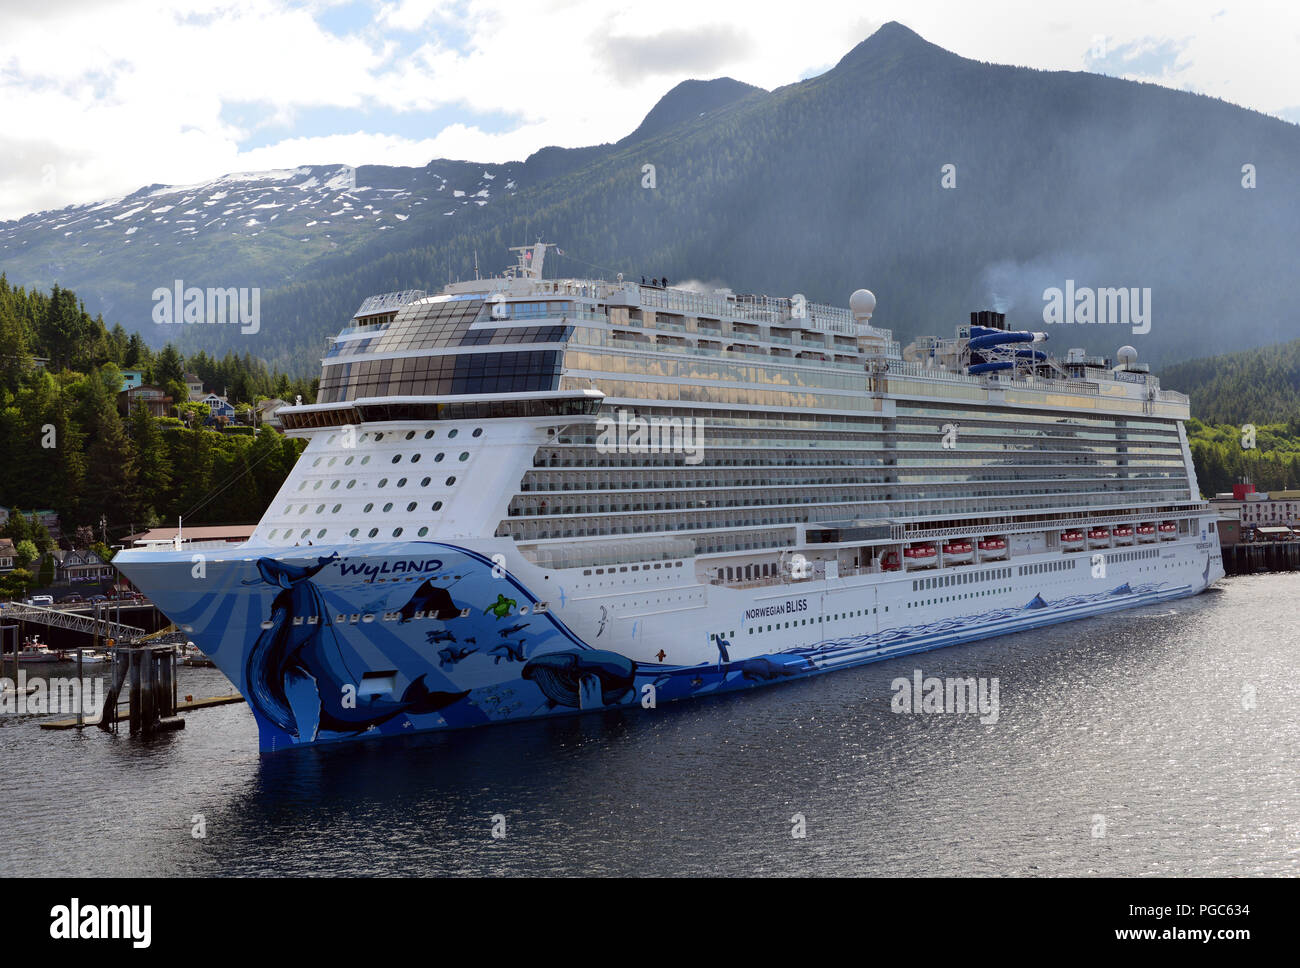 Norwegian Cruise Line Schiff Norwegian Bliss angedockt in Ketchikan, Alaska während ihrer ersten Saison kreuzen in den Gewässern von Alaska. Stockfoto